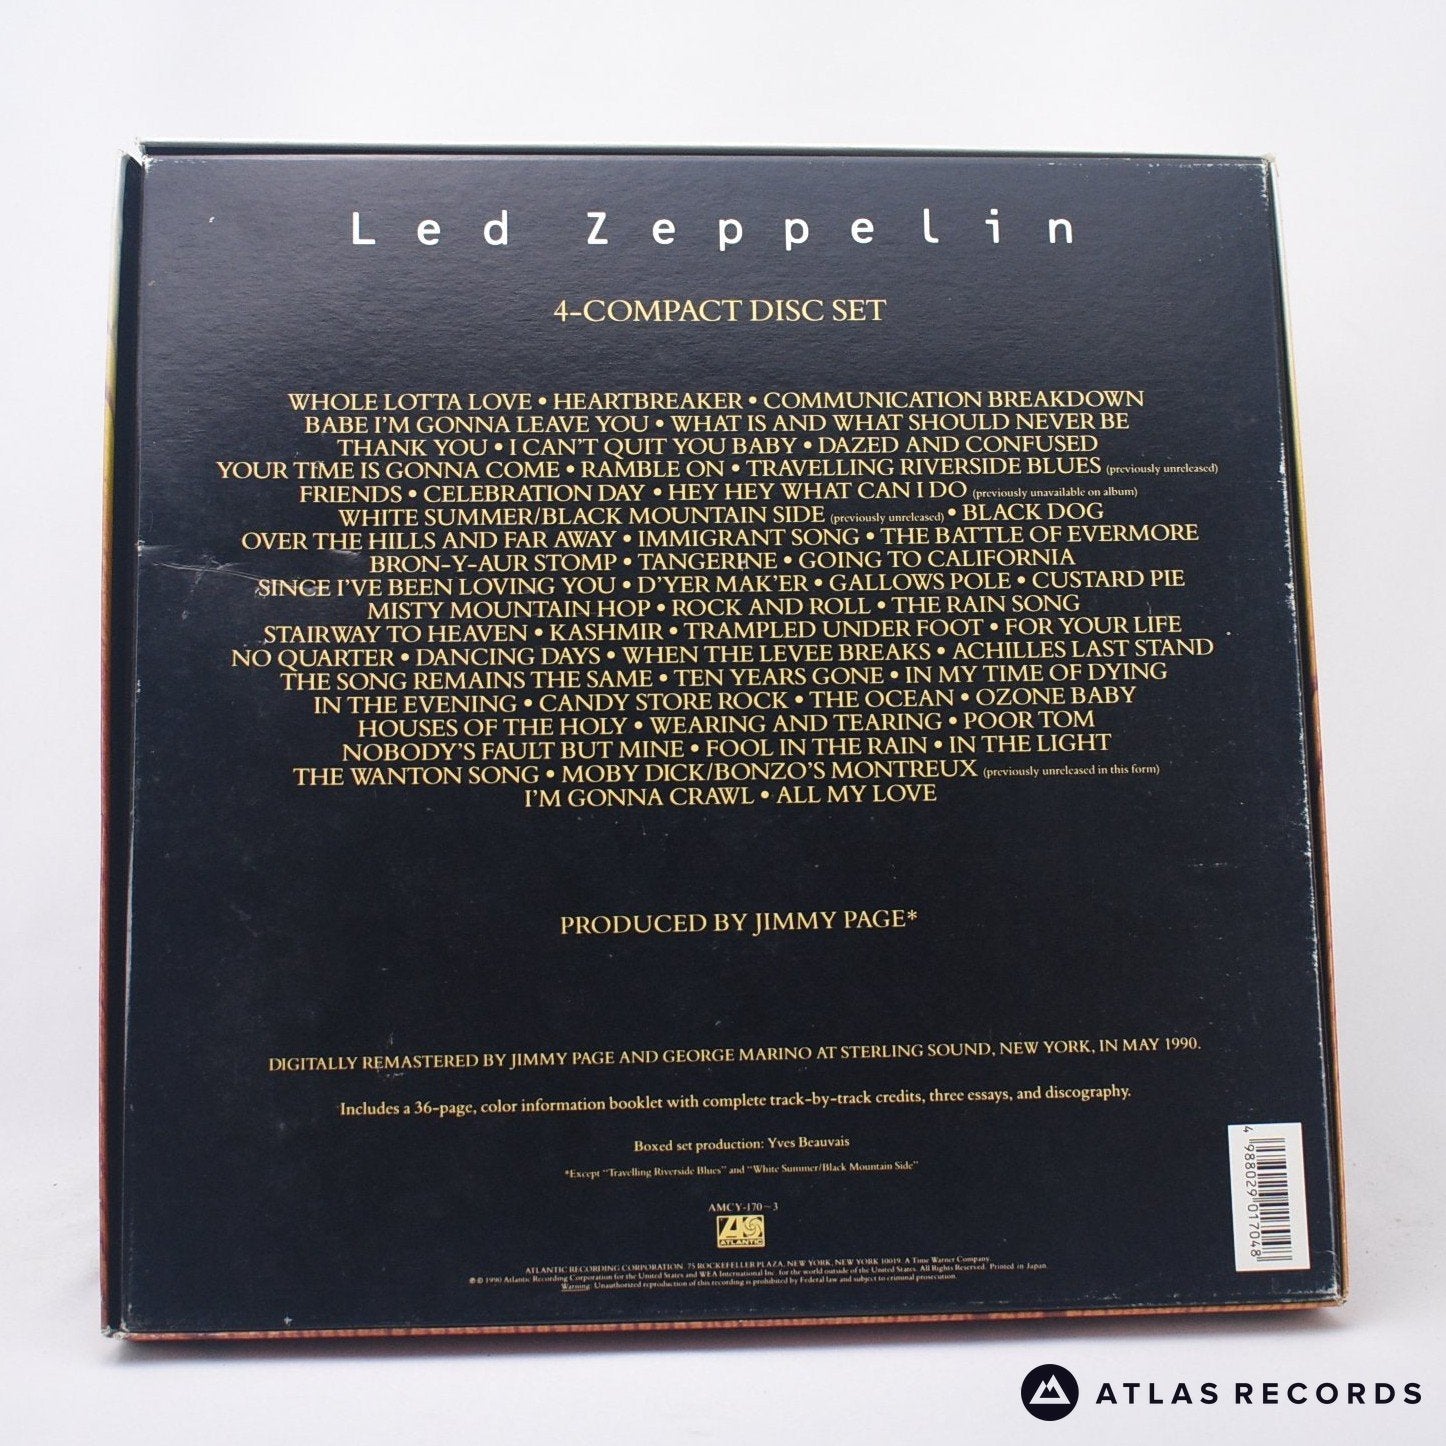 Led Zeppelin - Led Zeppelin 1968-1980 - Booklet,Box Set Vinyl